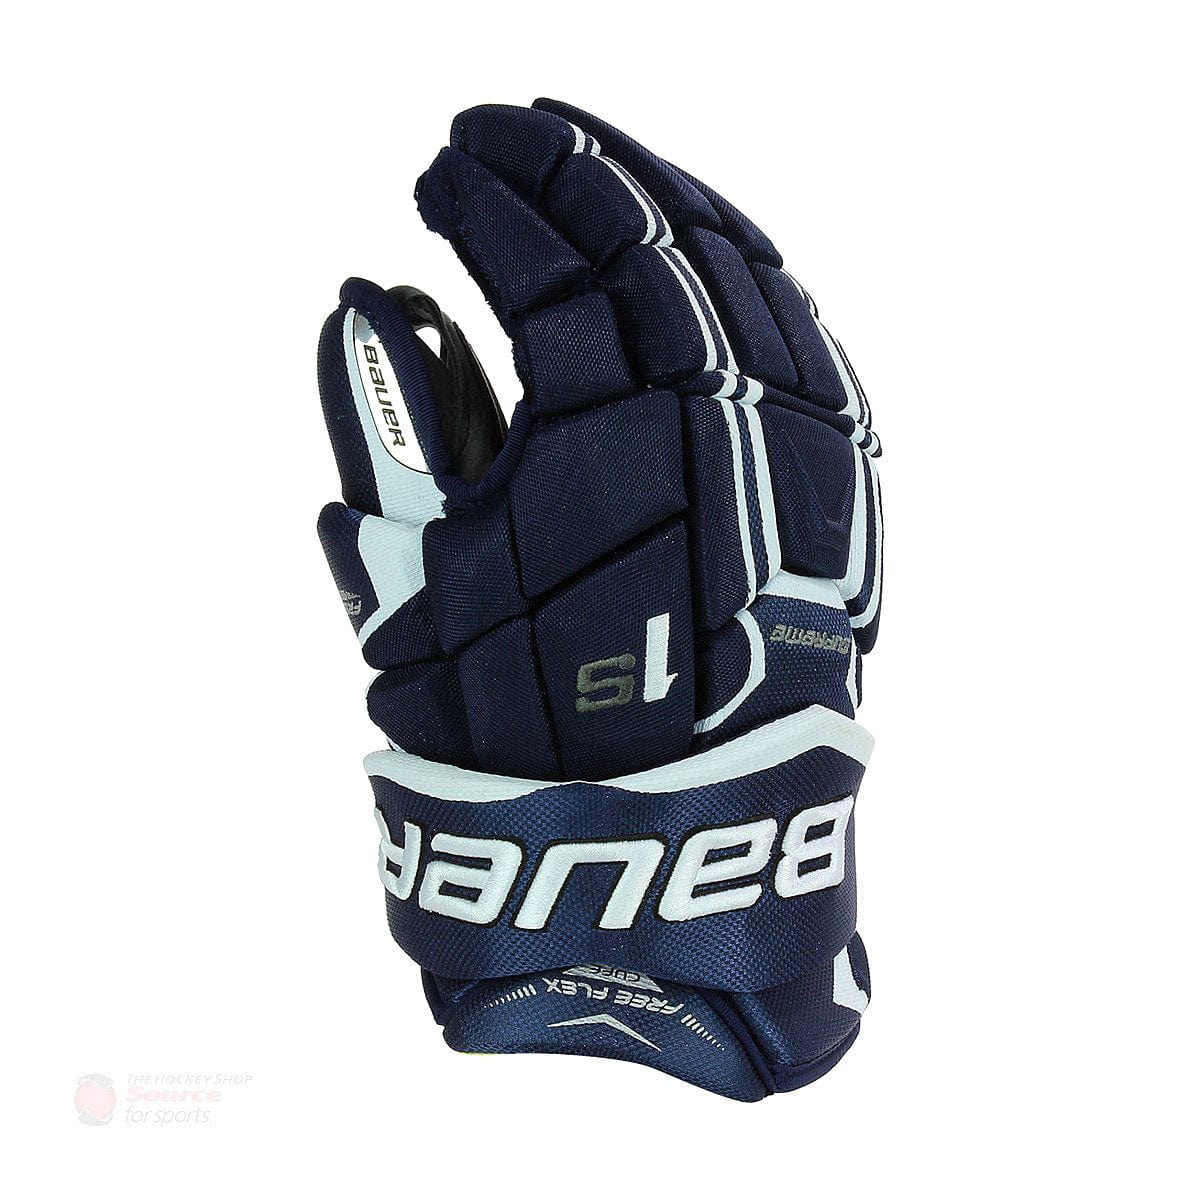 Bauer Supreme 1S Senior Hockey Gloves